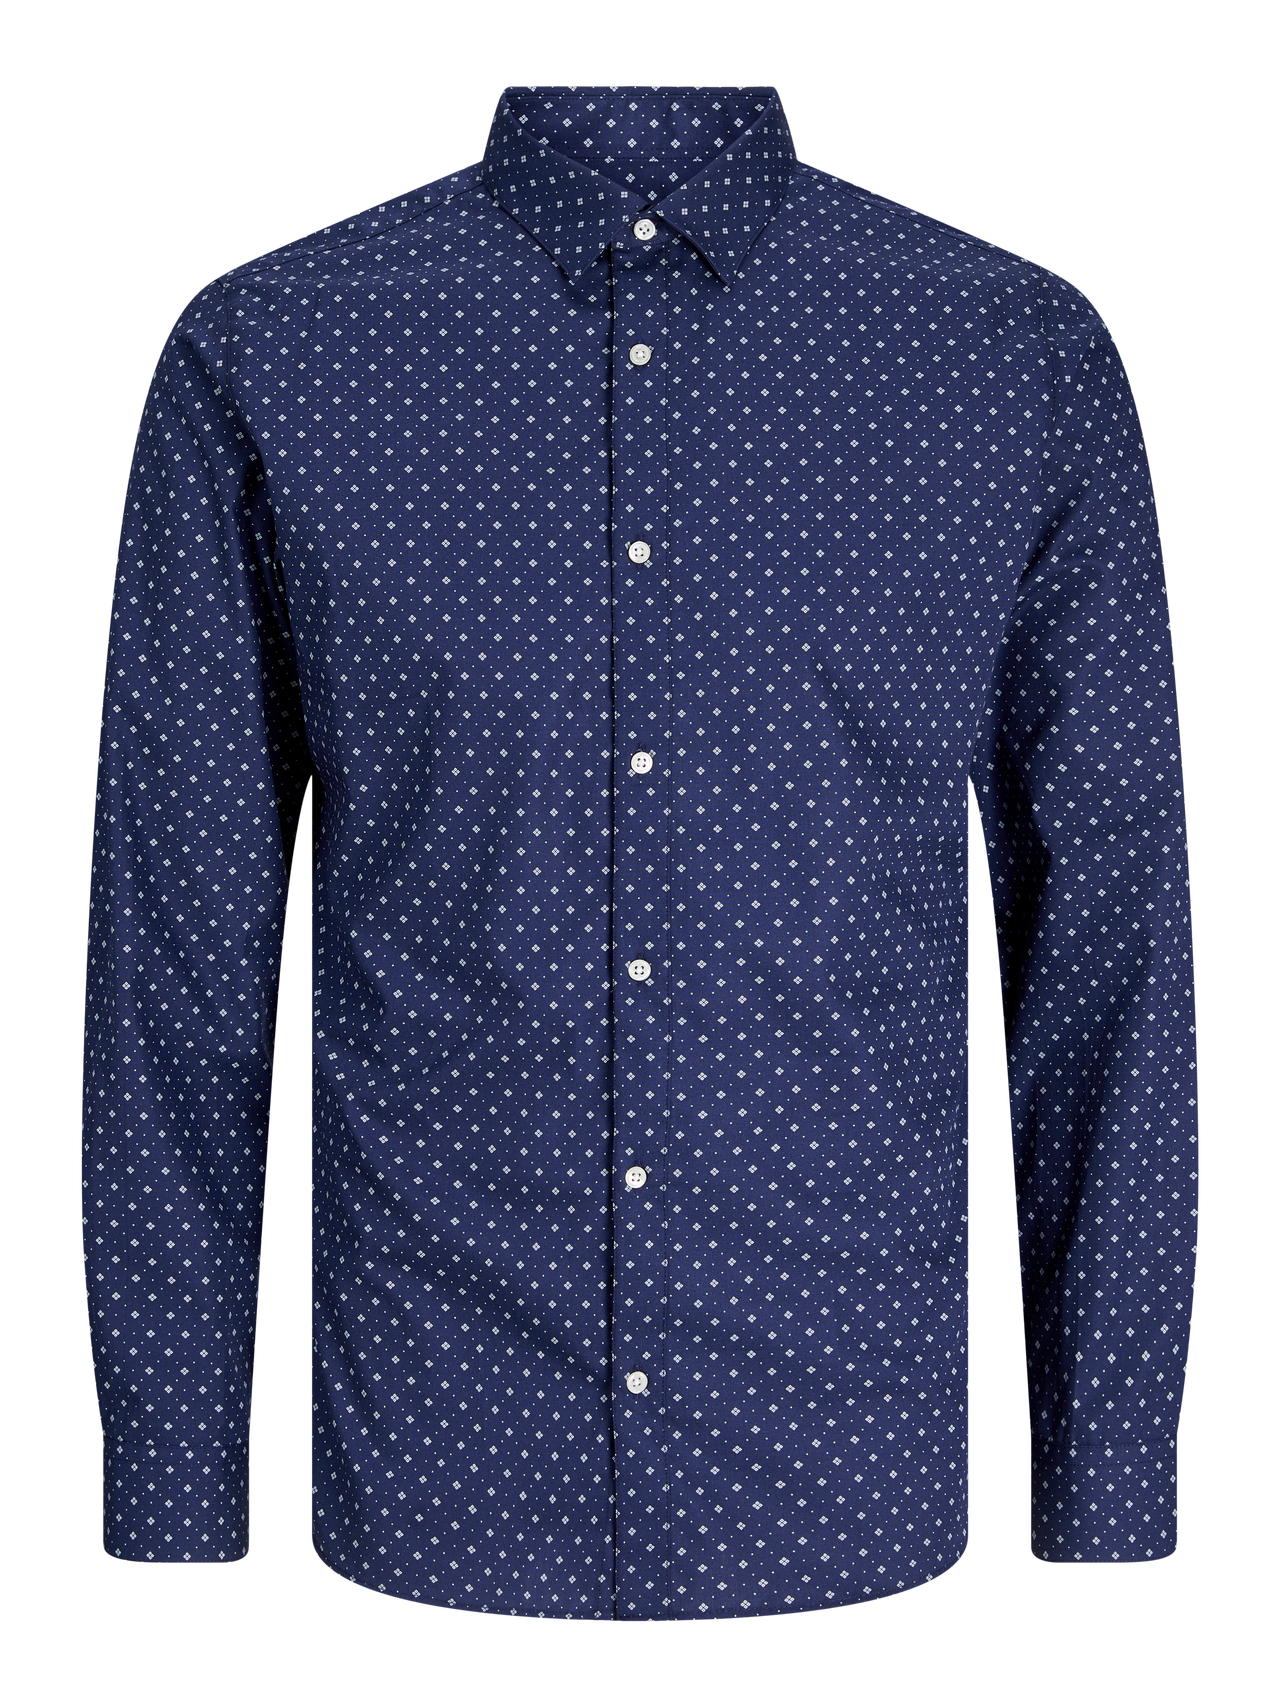 Jack & Jones Slim Fit Skjorte -Navy Blazer - 12260131